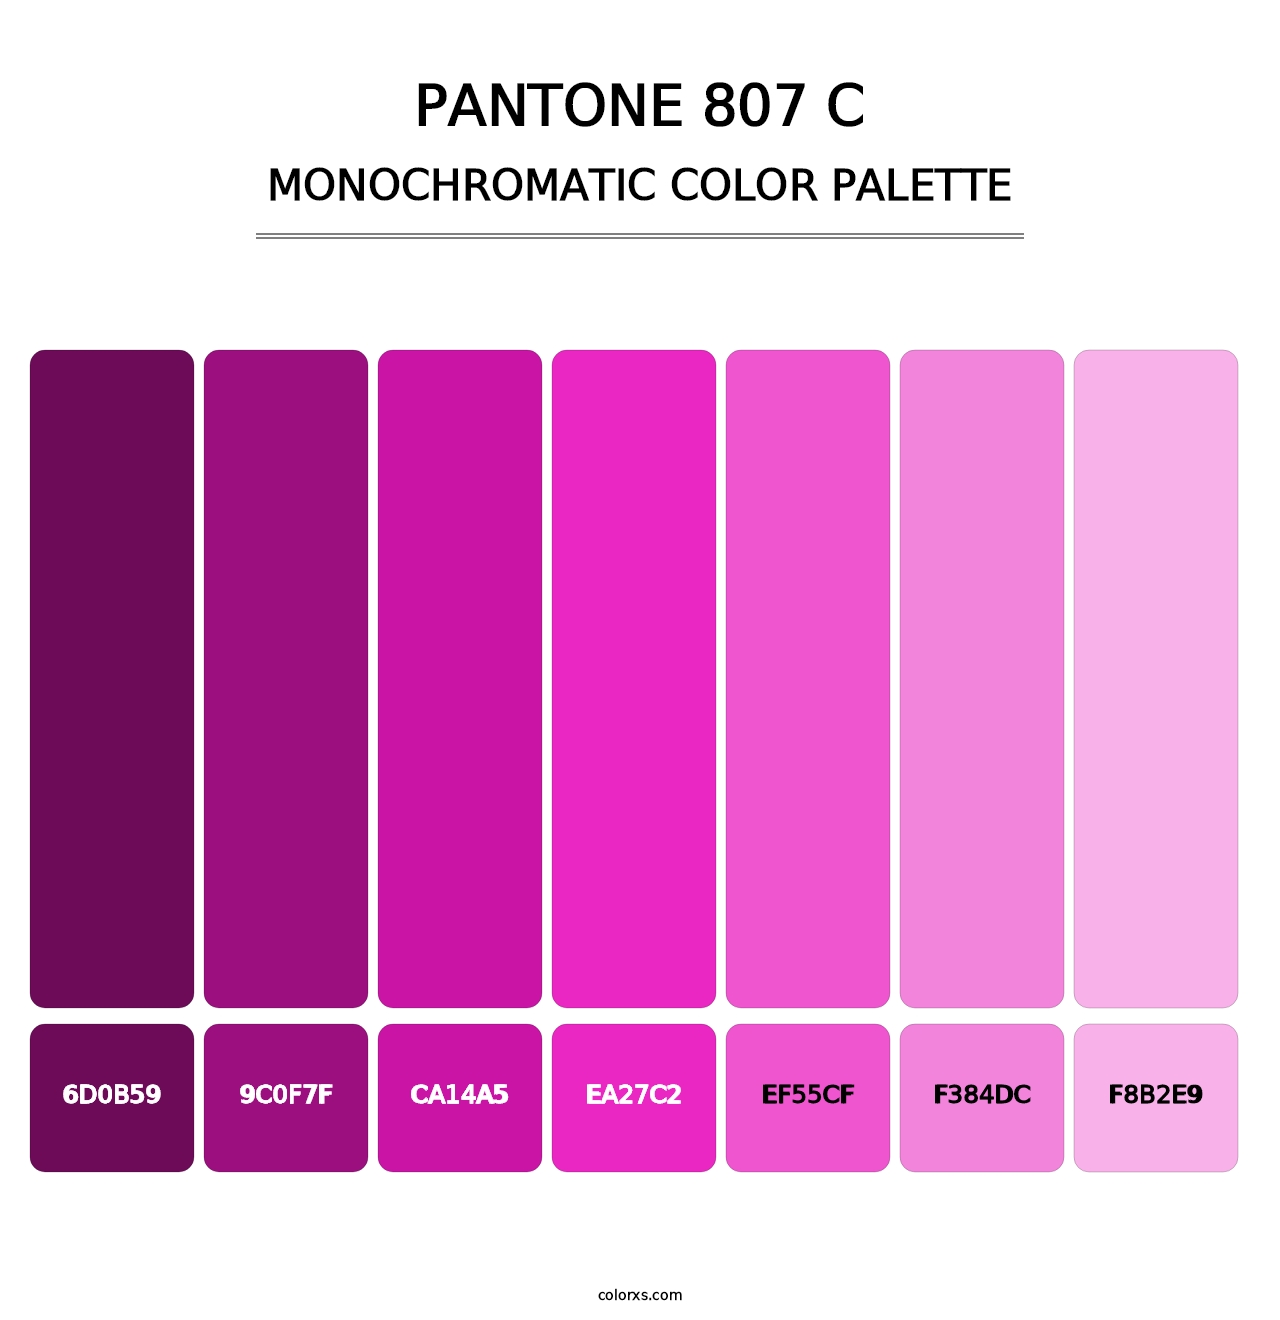 PANTONE 807 C - Monochromatic Color Palette